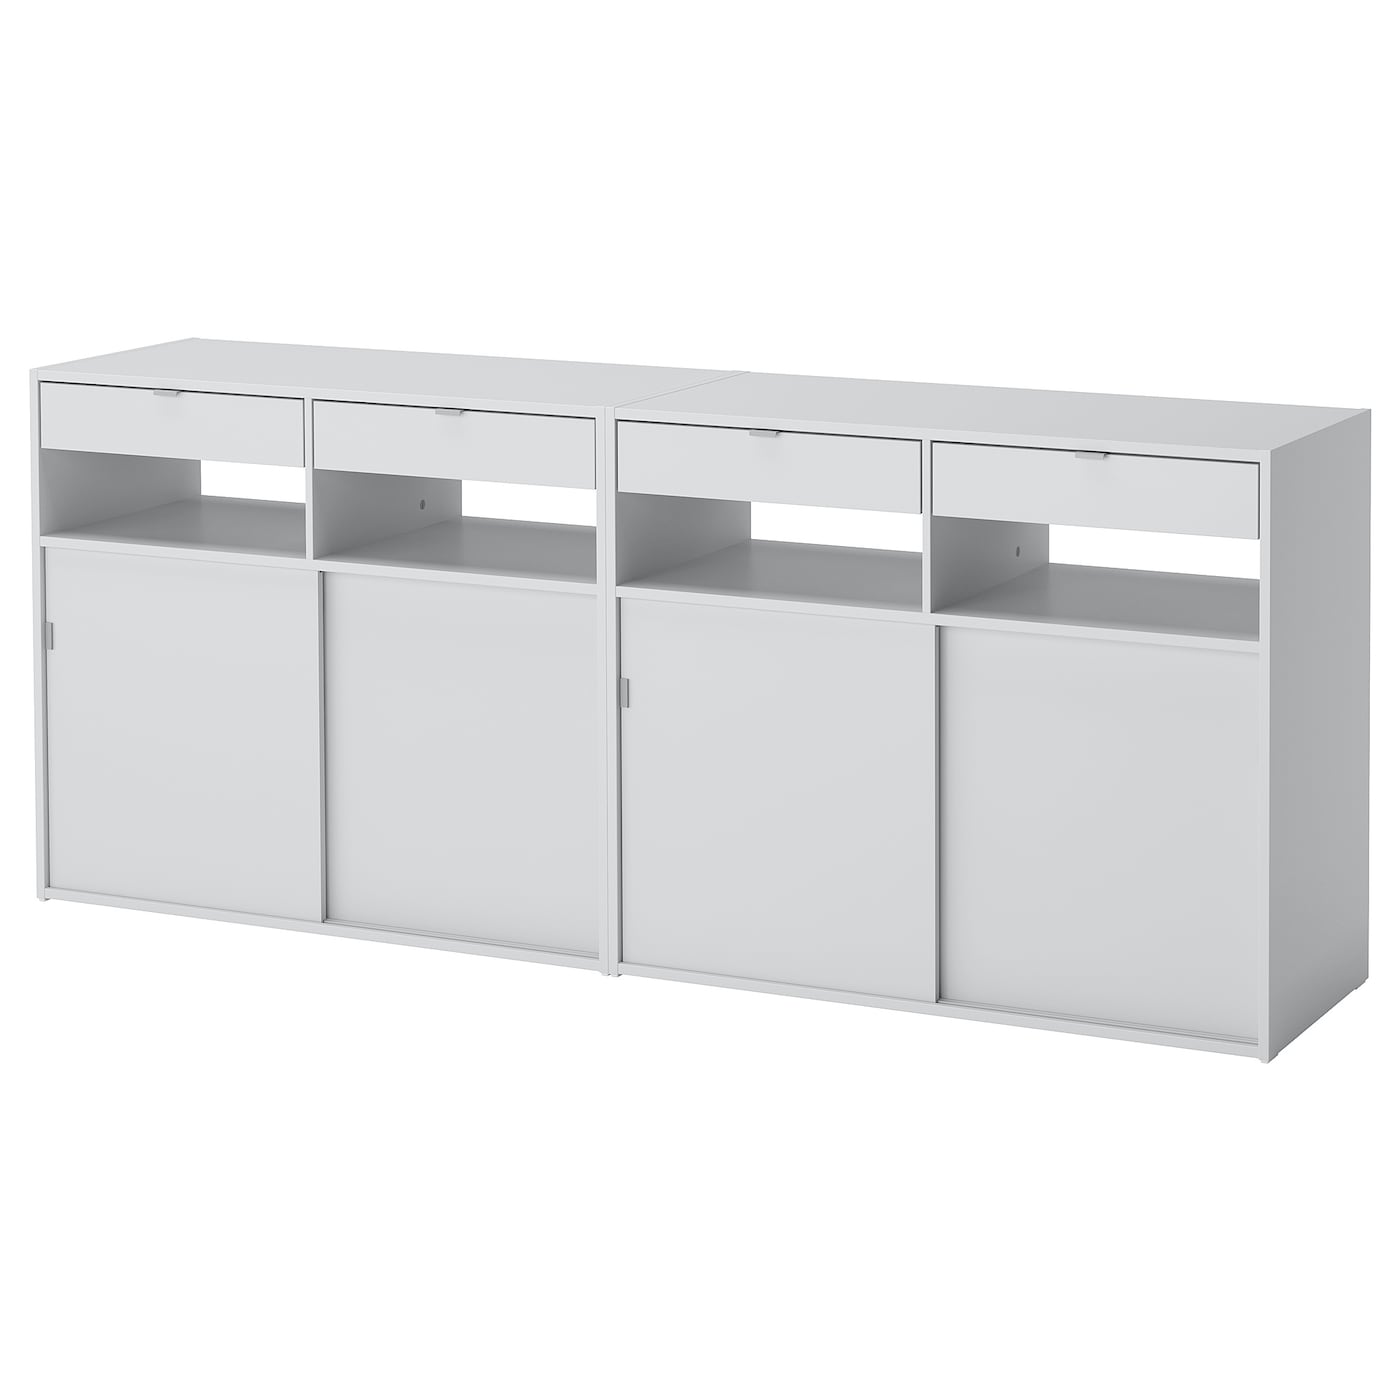 Шкаф -SPIKSMED  IKEA/ СПИКСМЕД ИКЕА, 195х79 см, серый